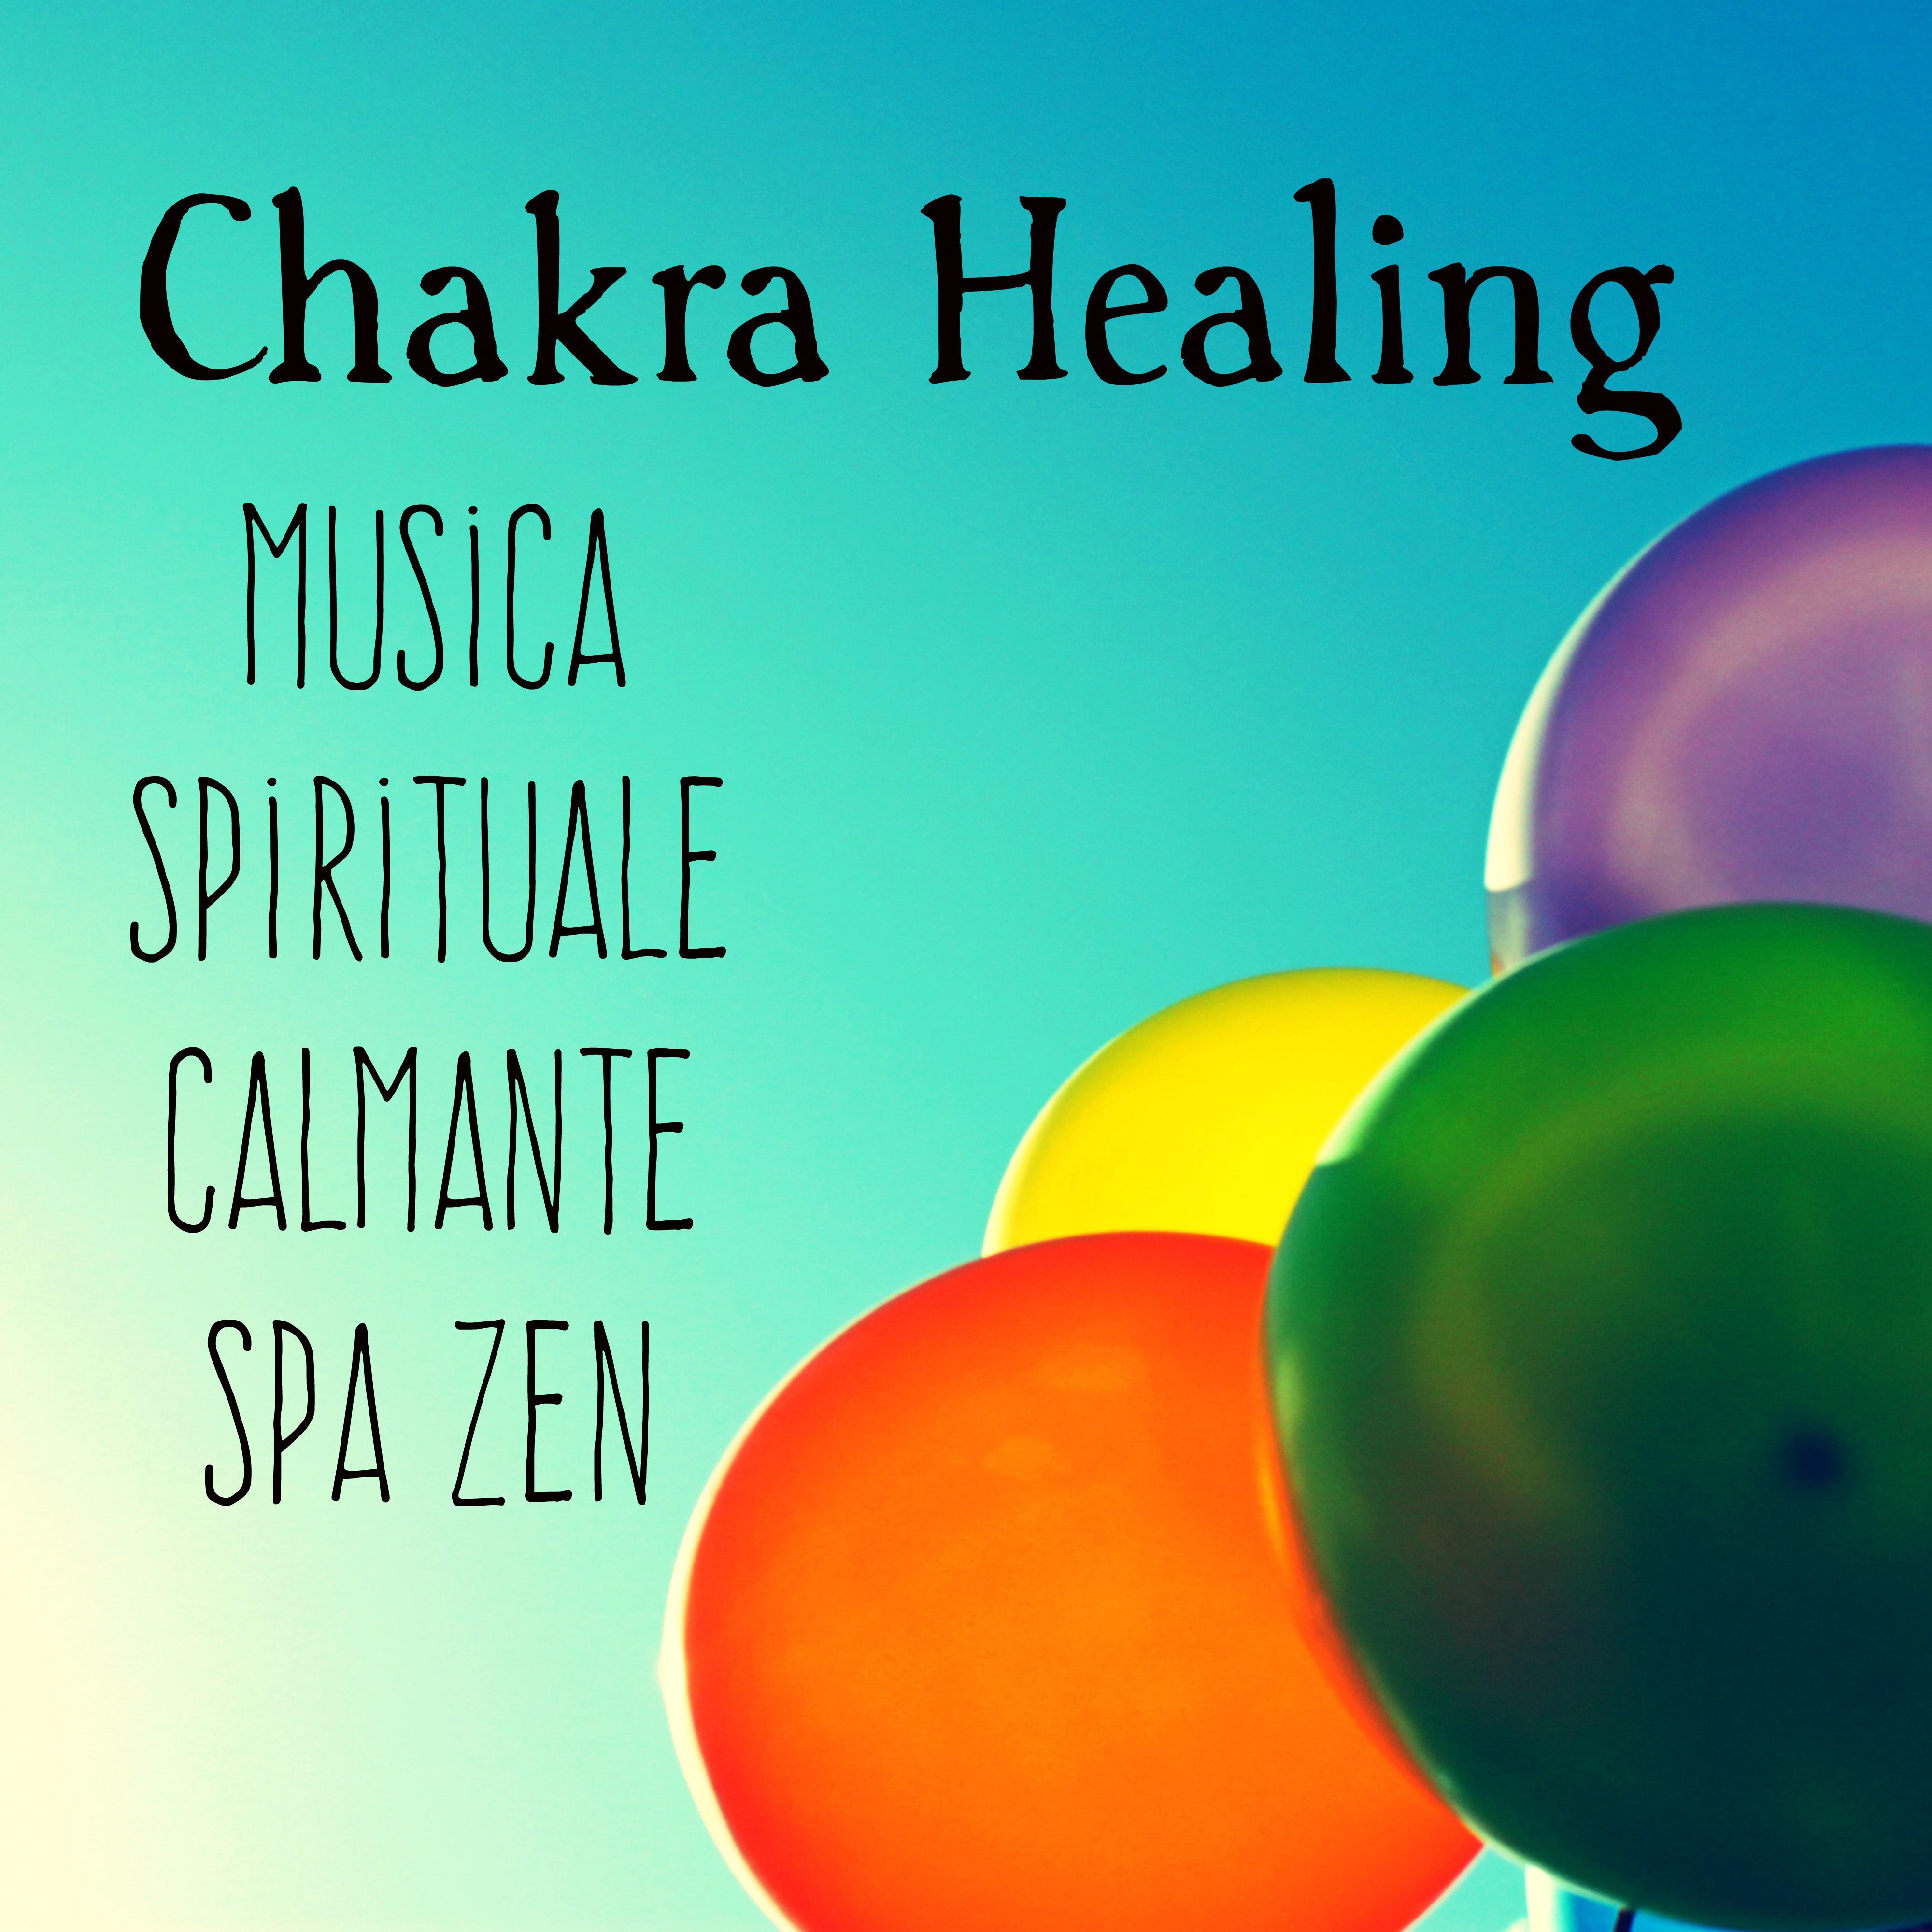 Chakra Healing - Musica Spa Zen Spirituale Calmante per Rilassamento Profondo e Training Autogeno con Suoni dalla Natura Strumentali New Age